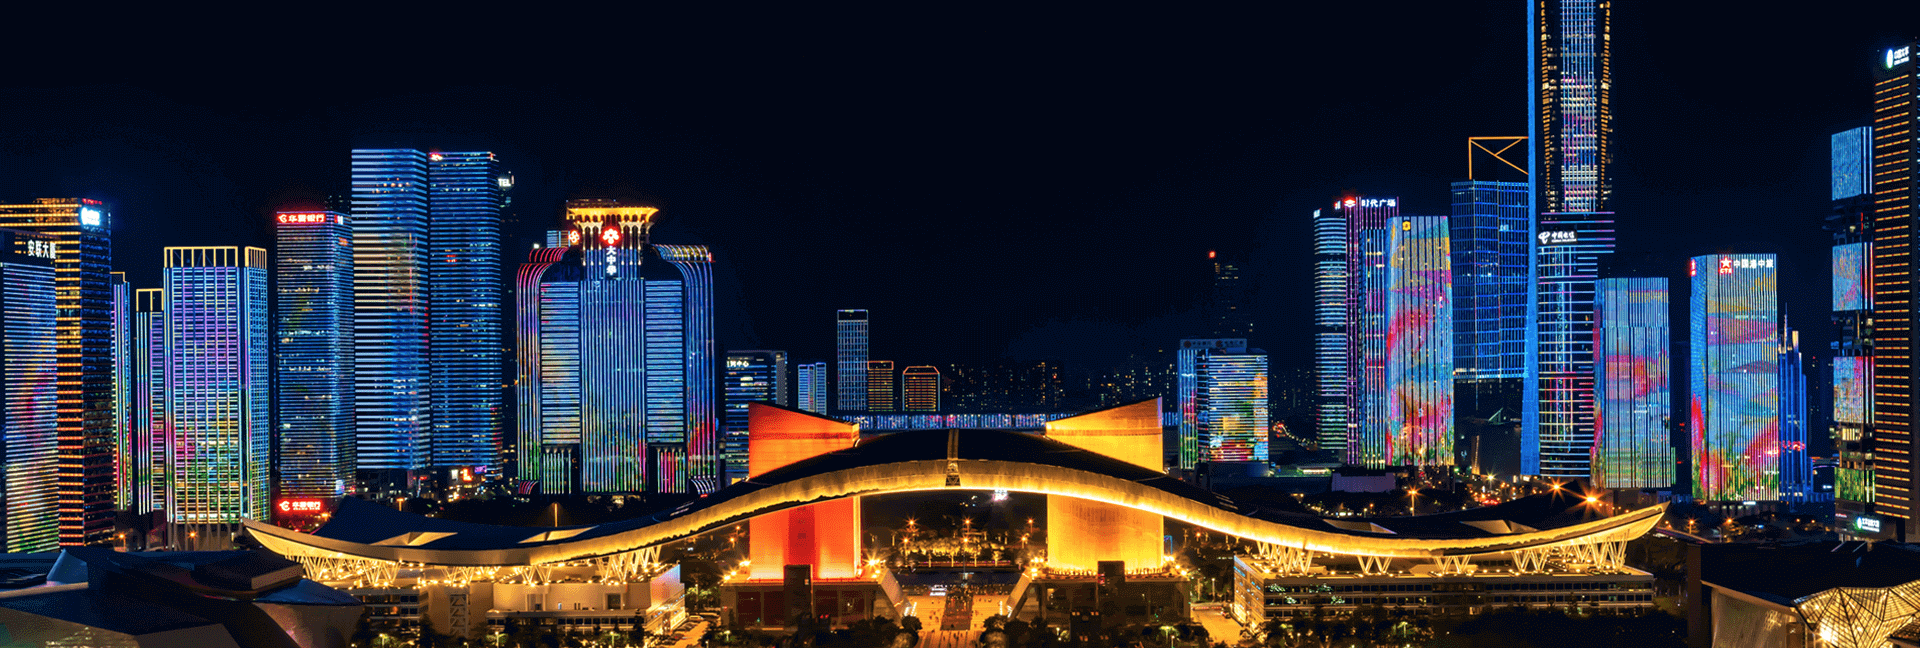 Shenzen's brightly lit skyline at night